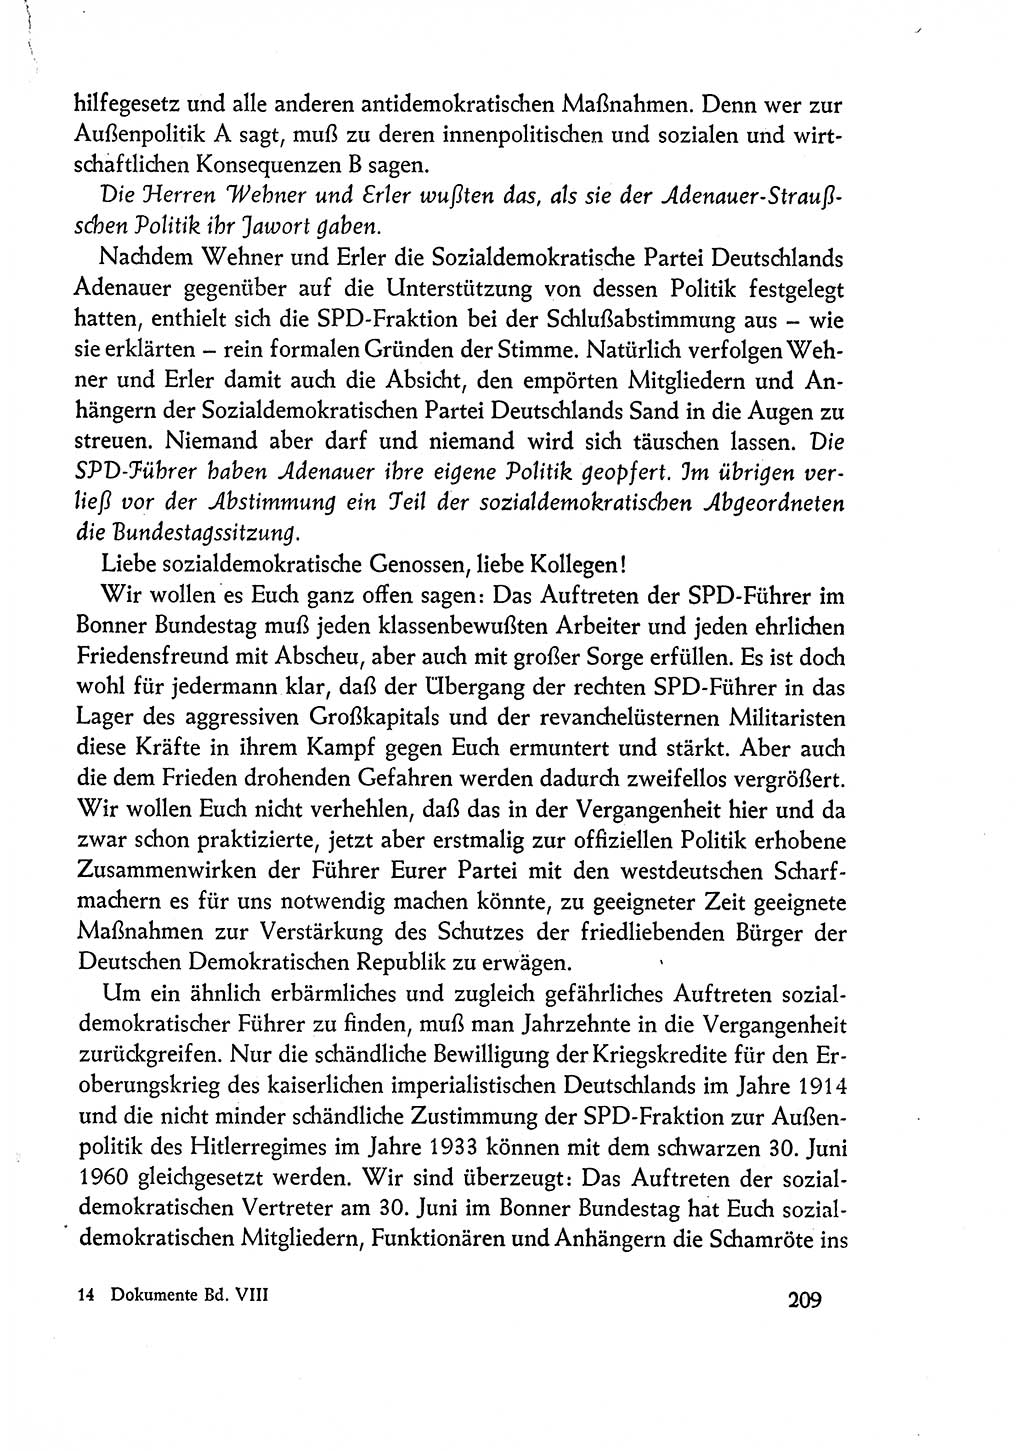 Dokumente der Sozialistischen Einheitspartei Deutschlands (SED) [Deutsche Demokratische Republik (DDR)] 1960-1961, Seite 209 (Dok. SED DDR 1960-1961, S. 209)